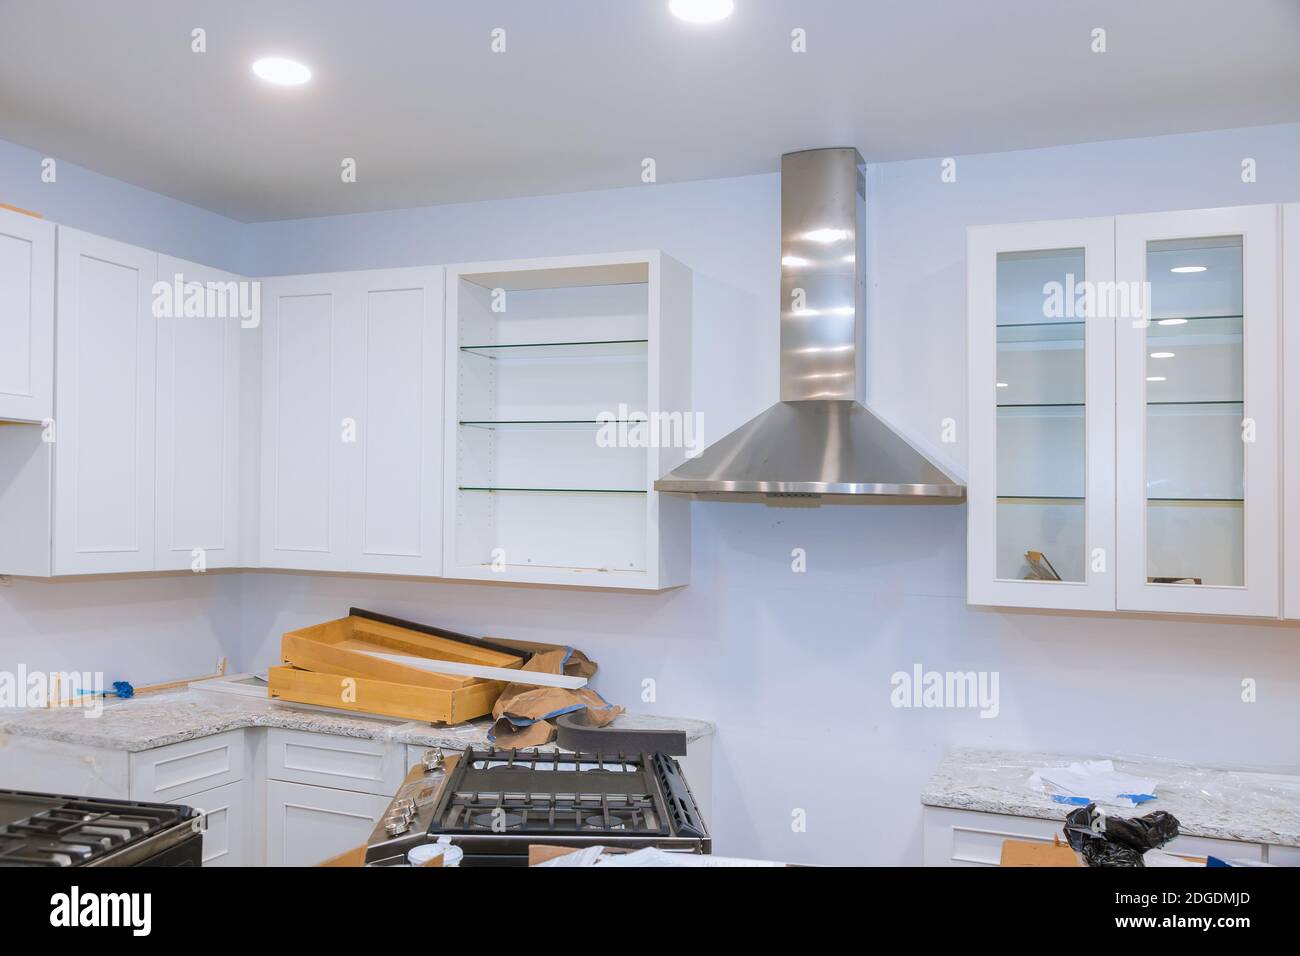 Erstellung benutzerdefinierter Neue in der modernen Küche zu installieren. Stockfoto